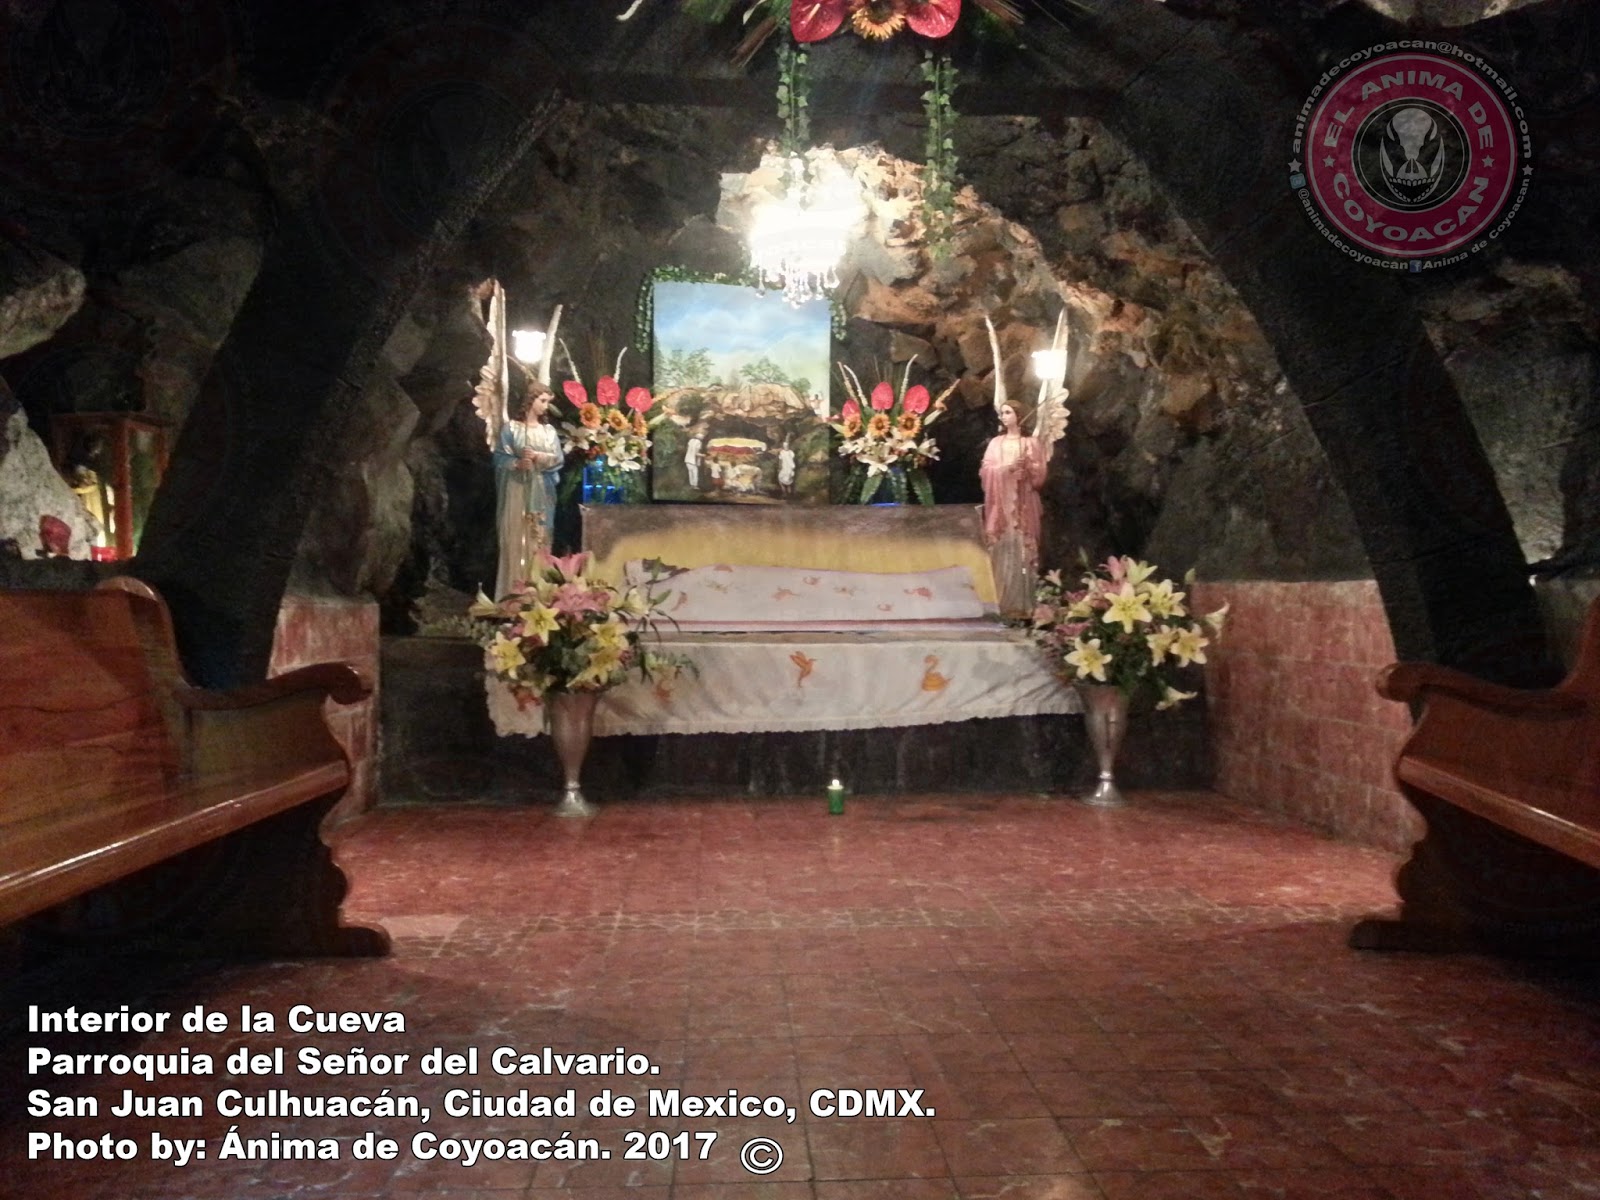 El Blog del Anima de Coyoacan: Un Cristo aparece en una cueva en Culhuacán.  (12 Fotos)